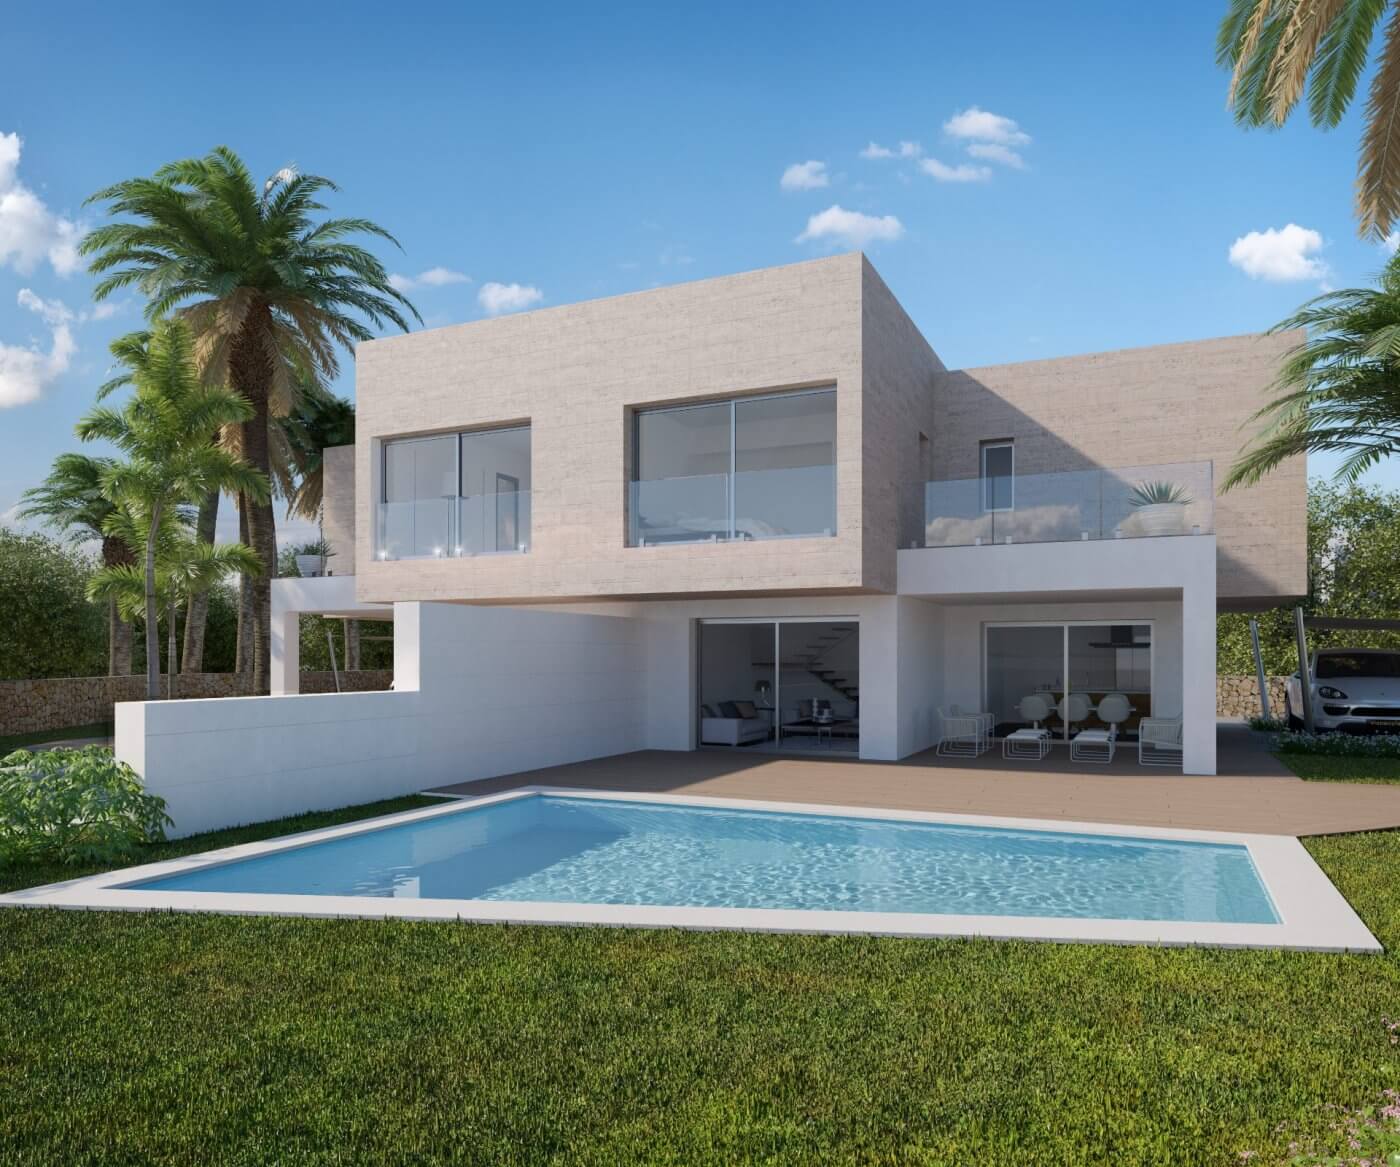 Close to Sea Brand New Semi Detached Villa for Sale in Moraira